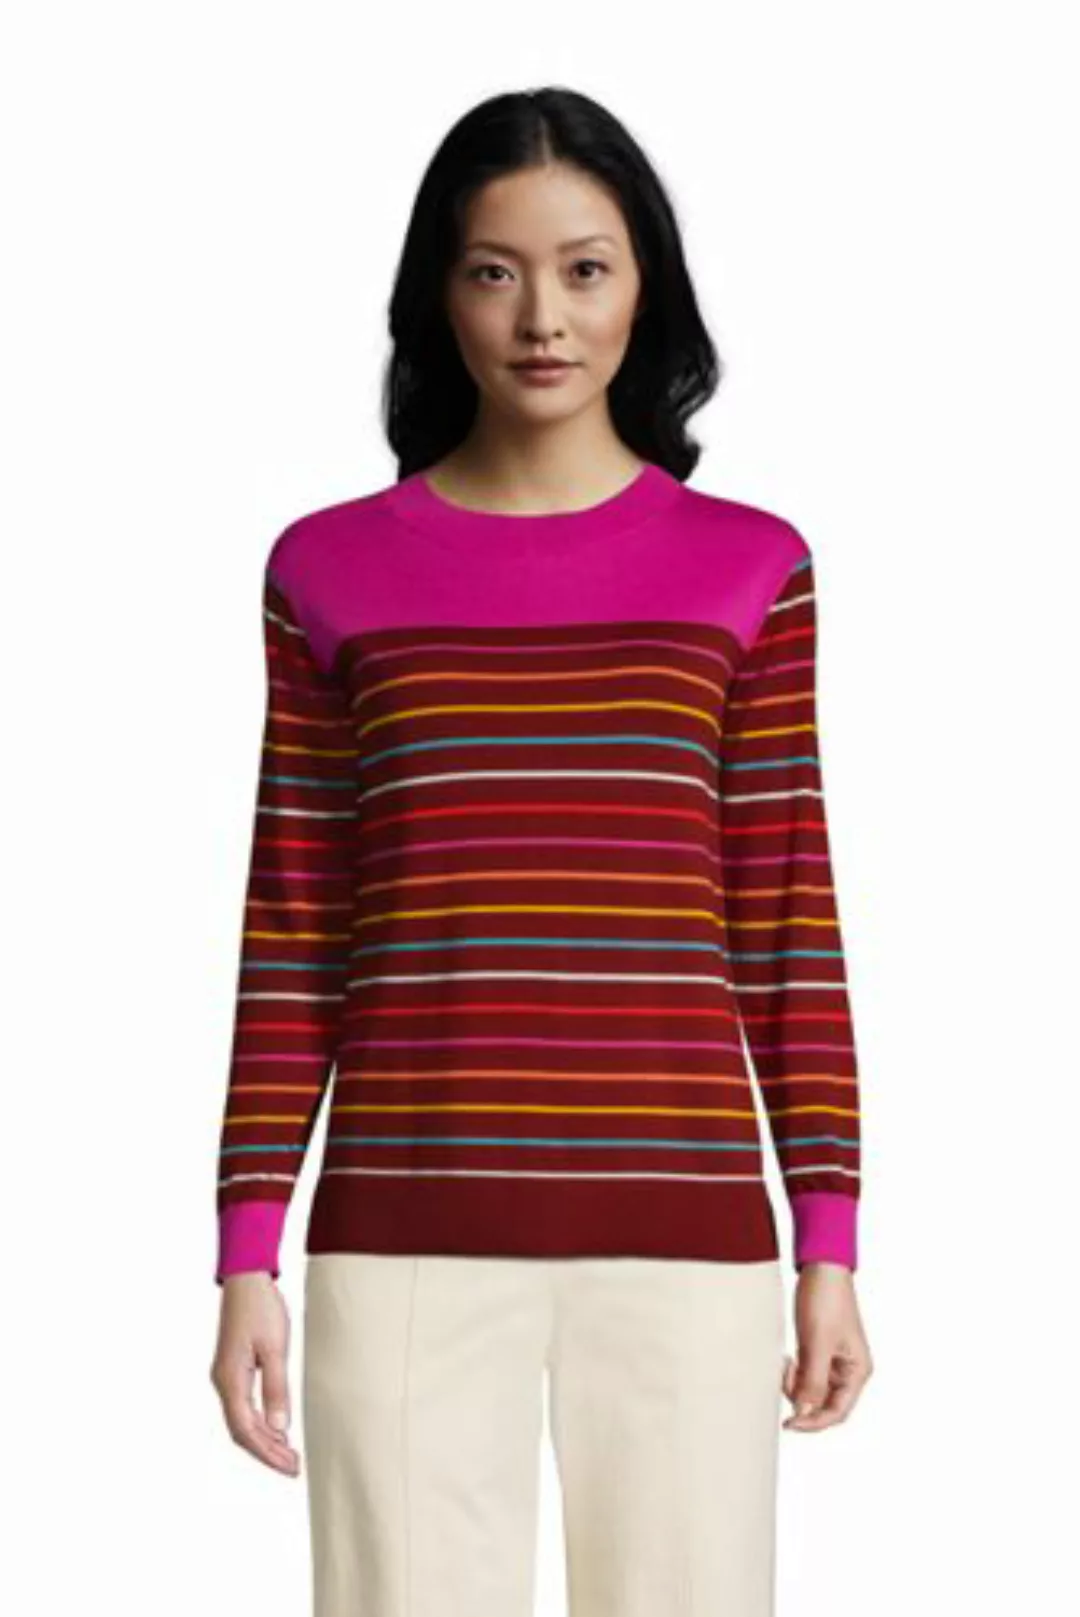 Colorblock Feinstrick-Pullover Rundhals aus Baumwolle, Damen, Größe: L Norm günstig online kaufen